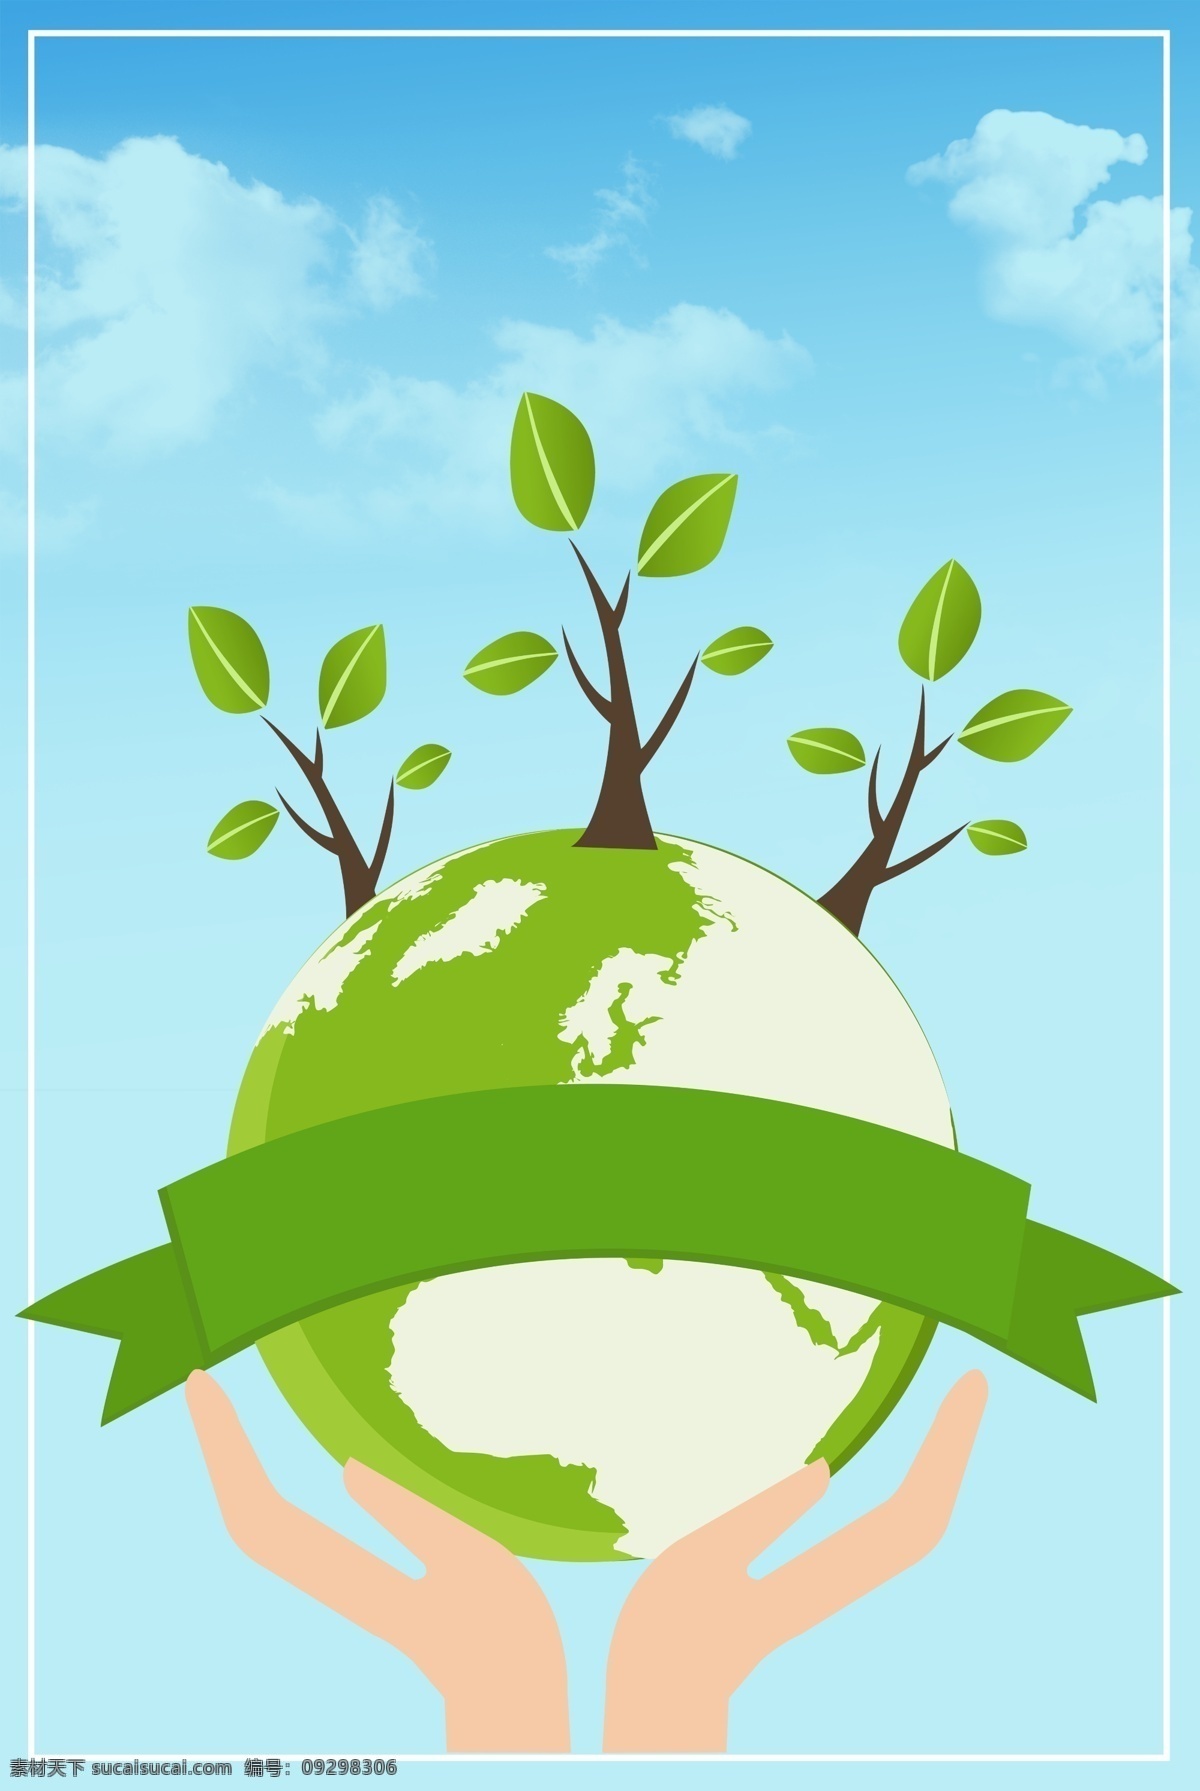 卡 通风 世界 地球日 手 捧 地球 环保 海报 卡通风 世界地球日 手捧地球 绿树 绿色